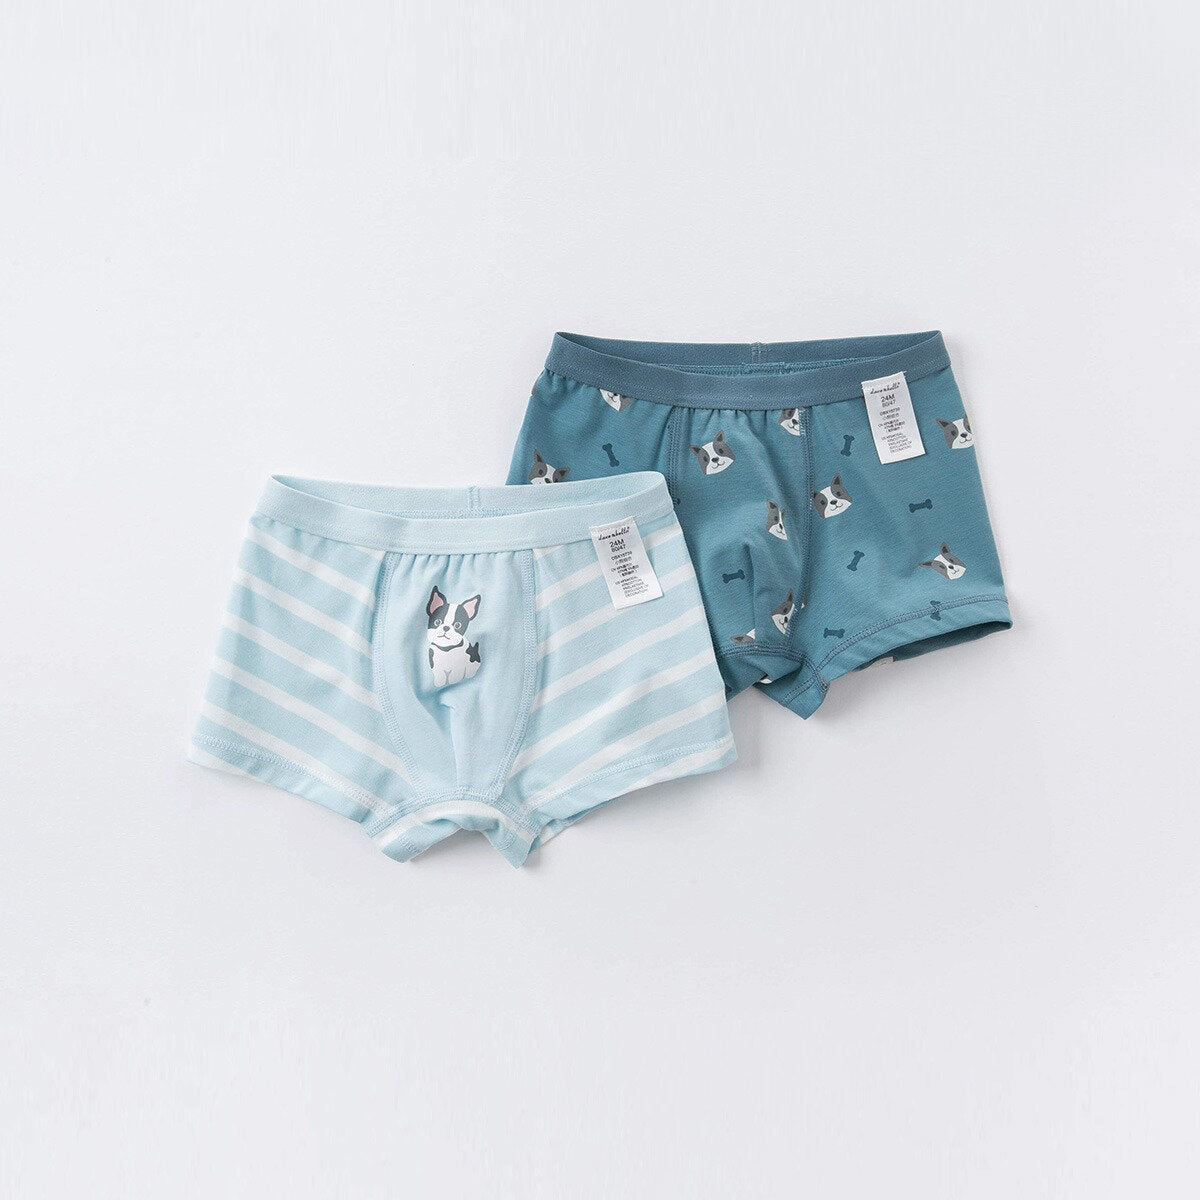 [Last] 2 Pack Boy's Underwear 5yrs(110cm)